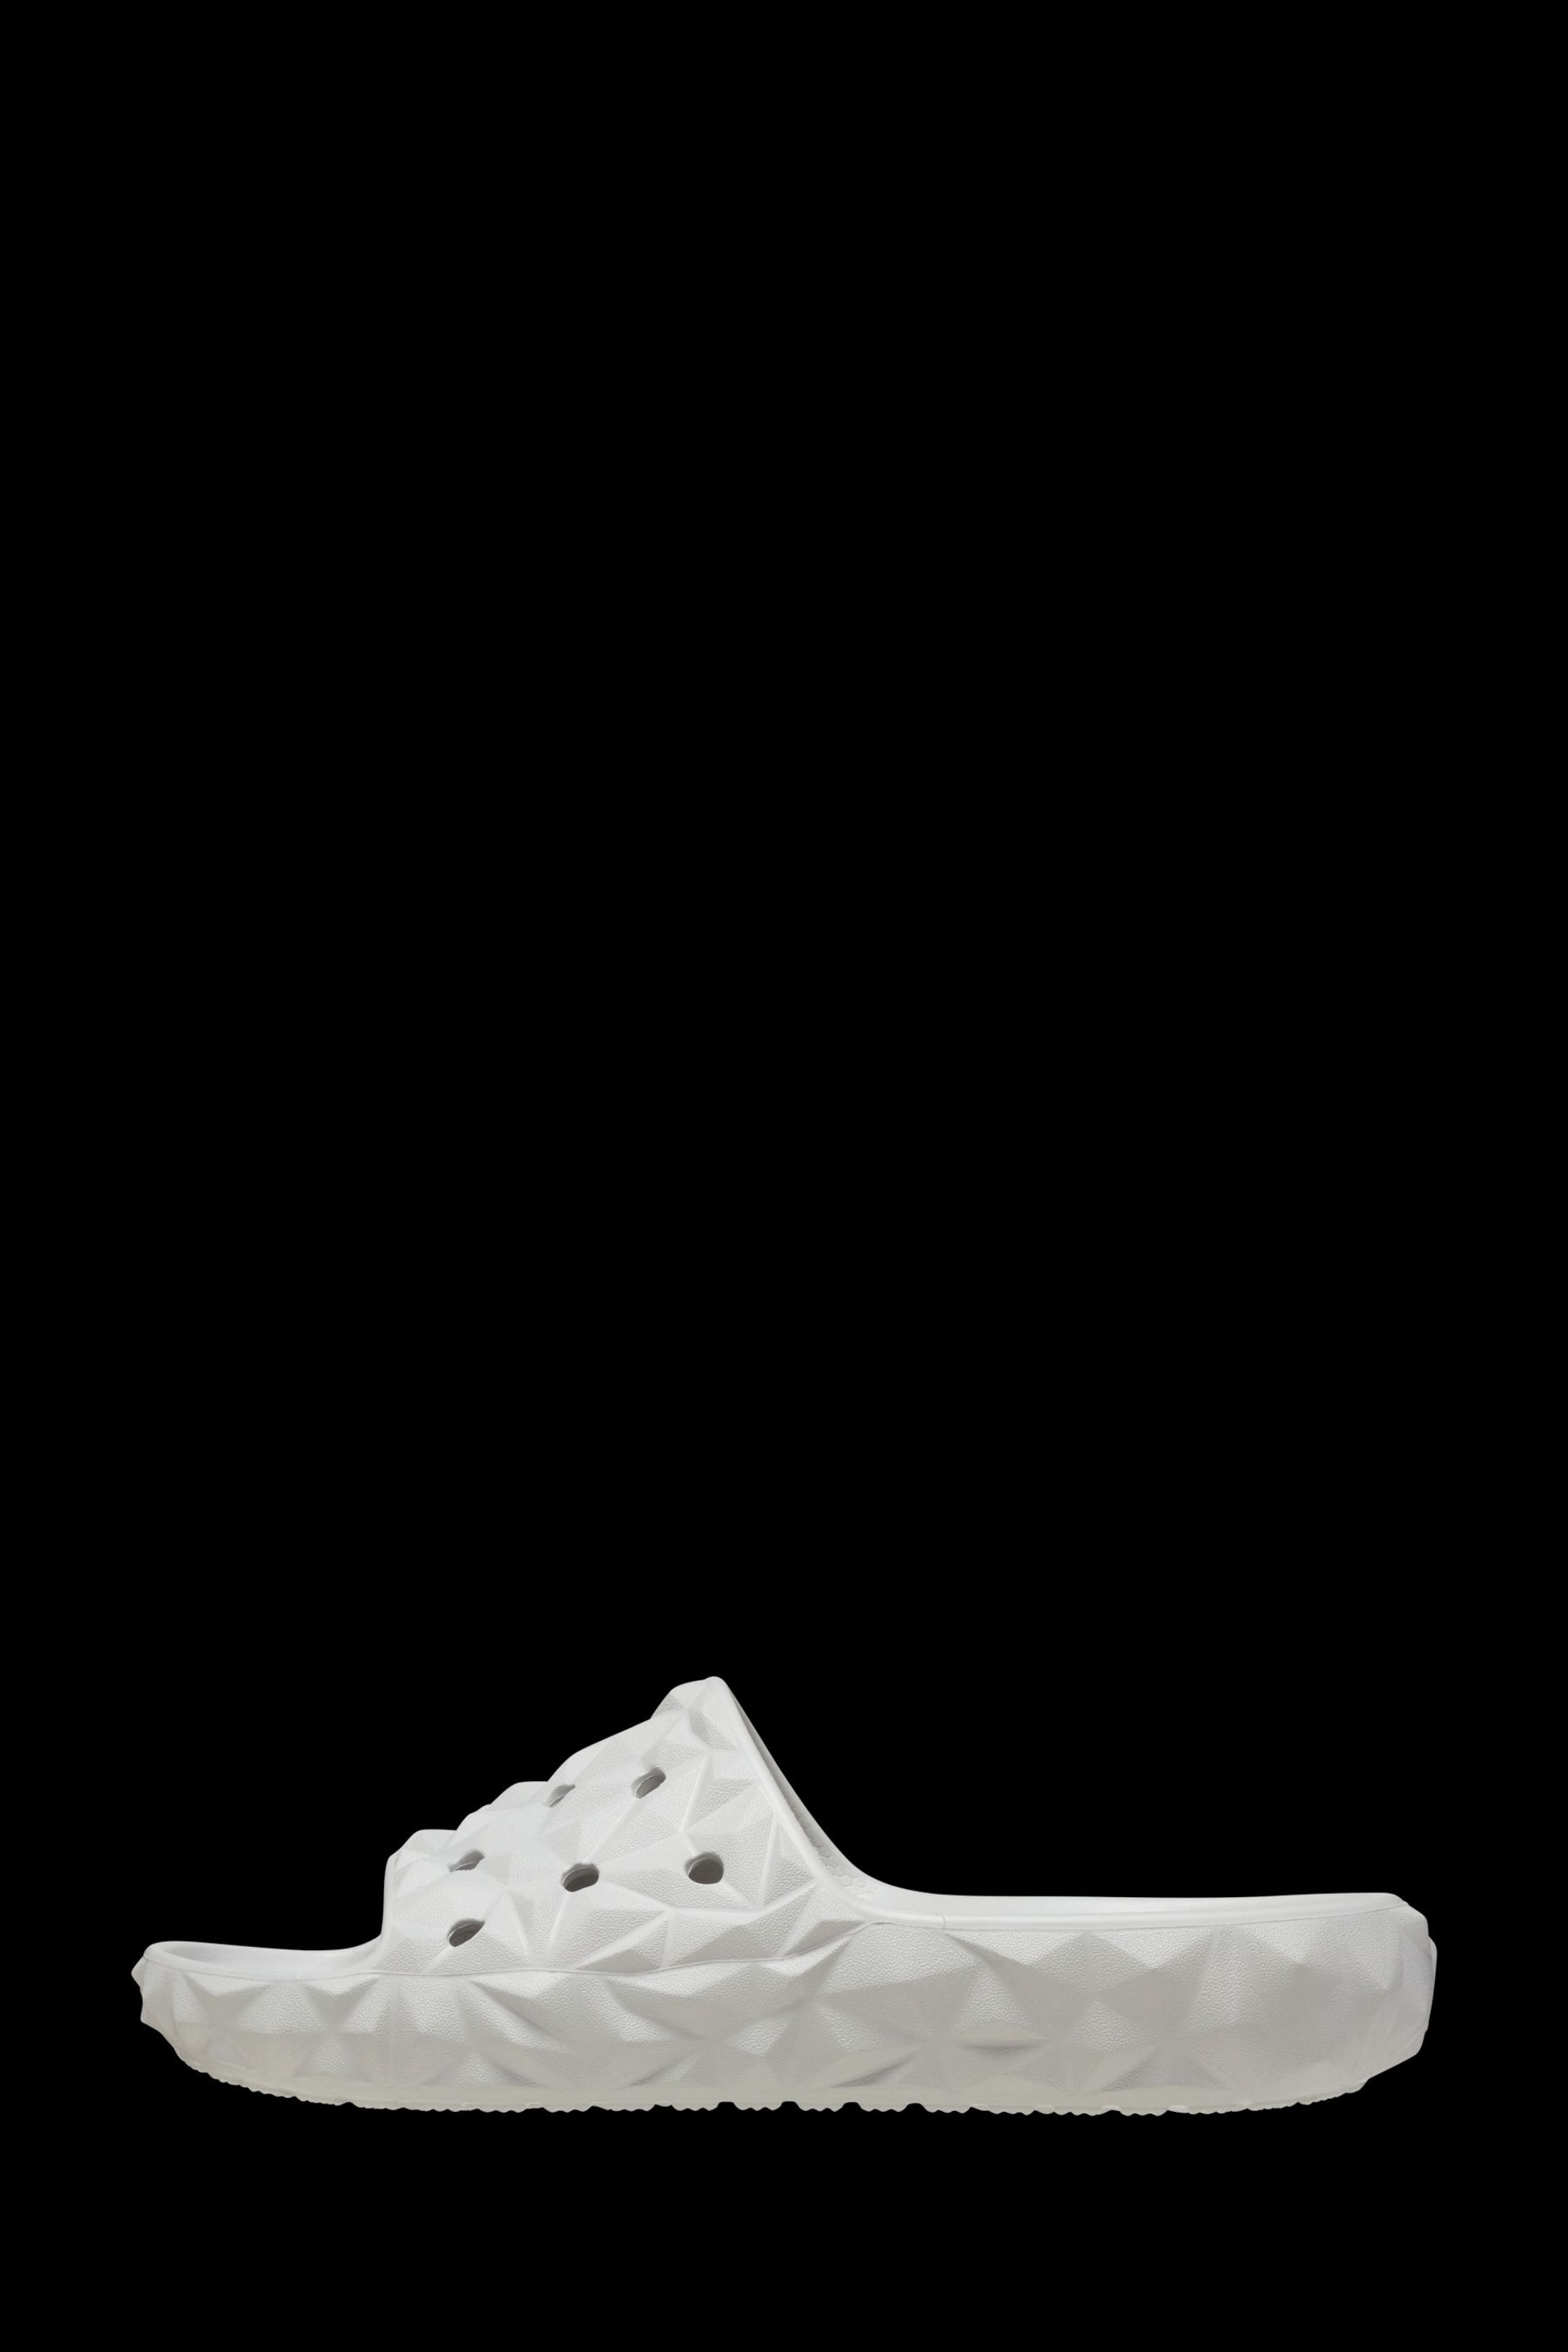 Crocs Geometric Slide Sandals - Image 3 of 7